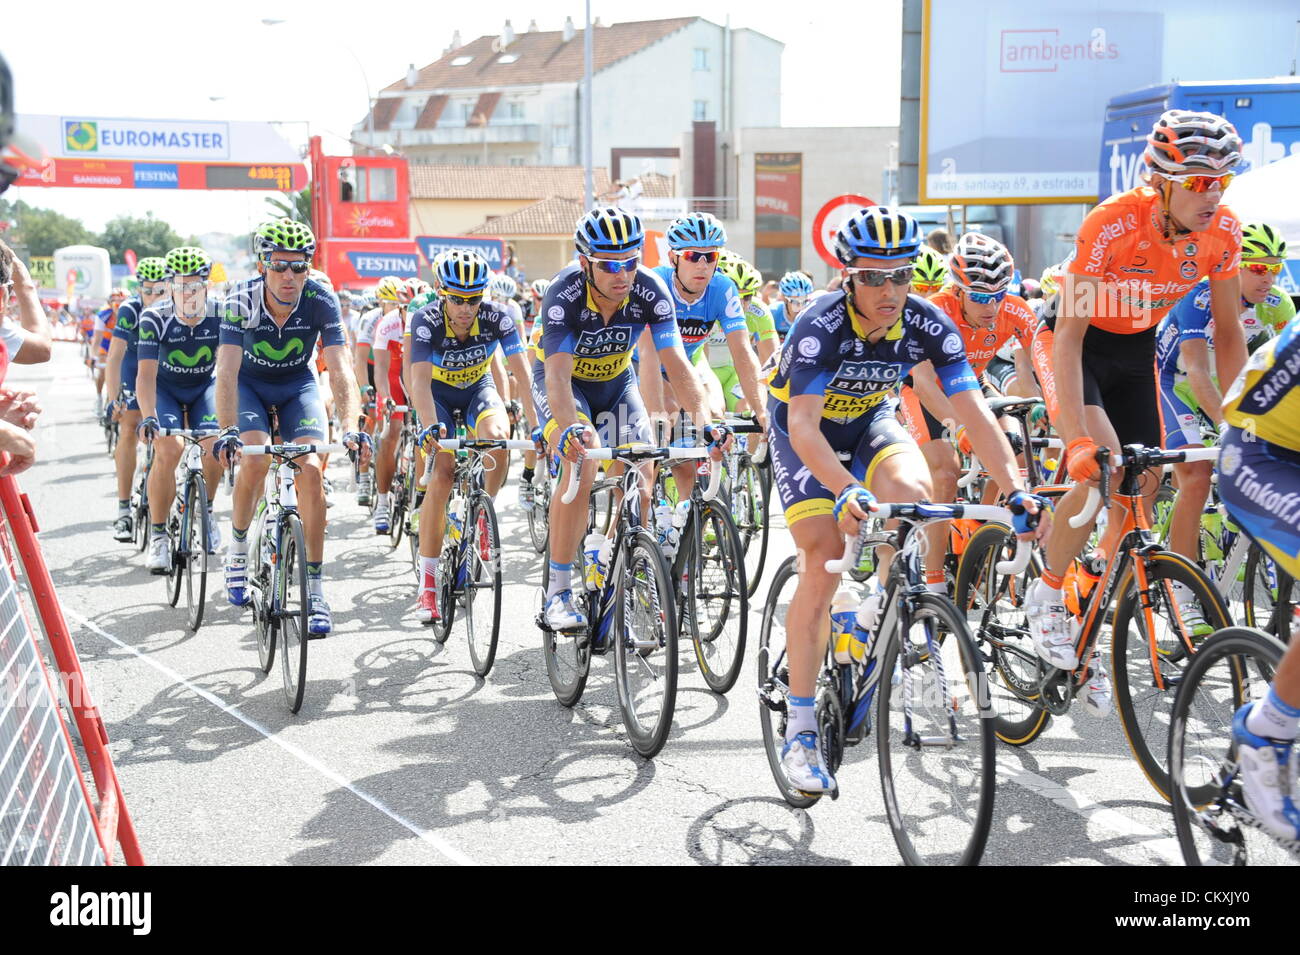 28.08.2012. Ponteareas - Sanxenxo, Spain.  Vuelta a Espana, stage   10 Ponteareas - Sanxenxo, Saxo Bank - Tinkoff Bank 2012, Contador Alberto, Sanxenxo Stock Photo